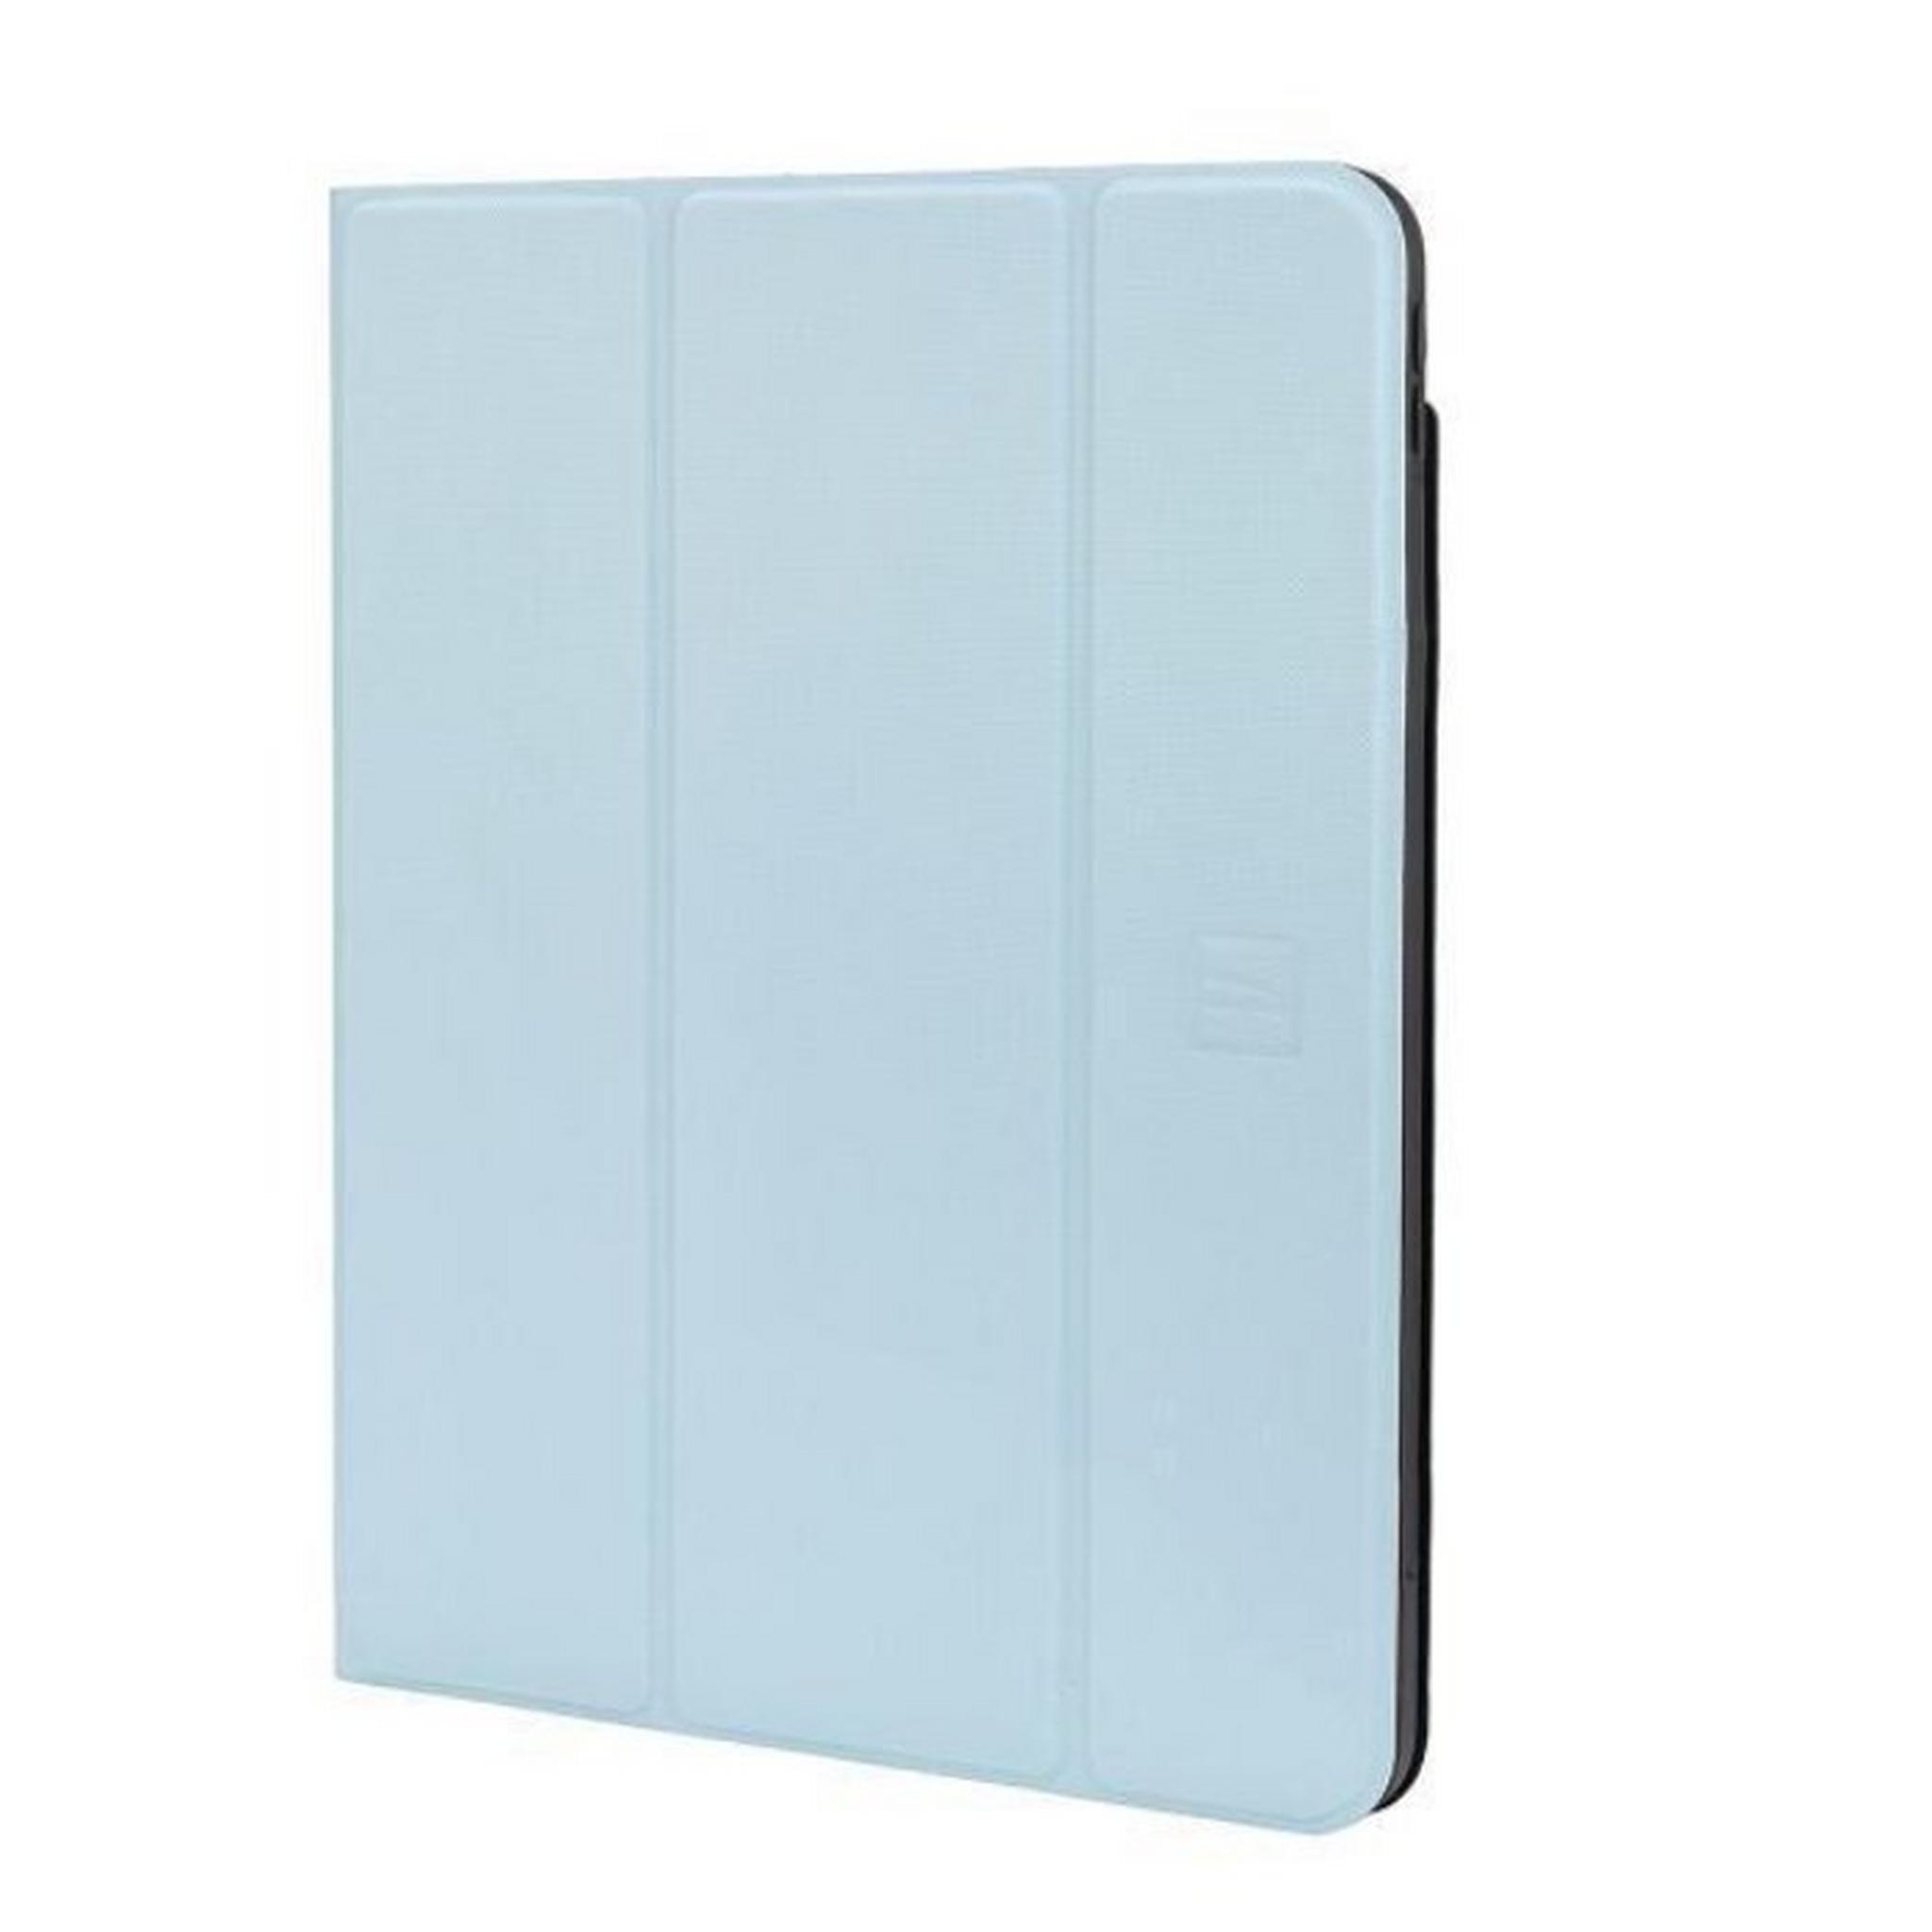 Tucano Up Plus Folio Case for iPad Air 10.9-inch, IPD109UPP-Z- Blue